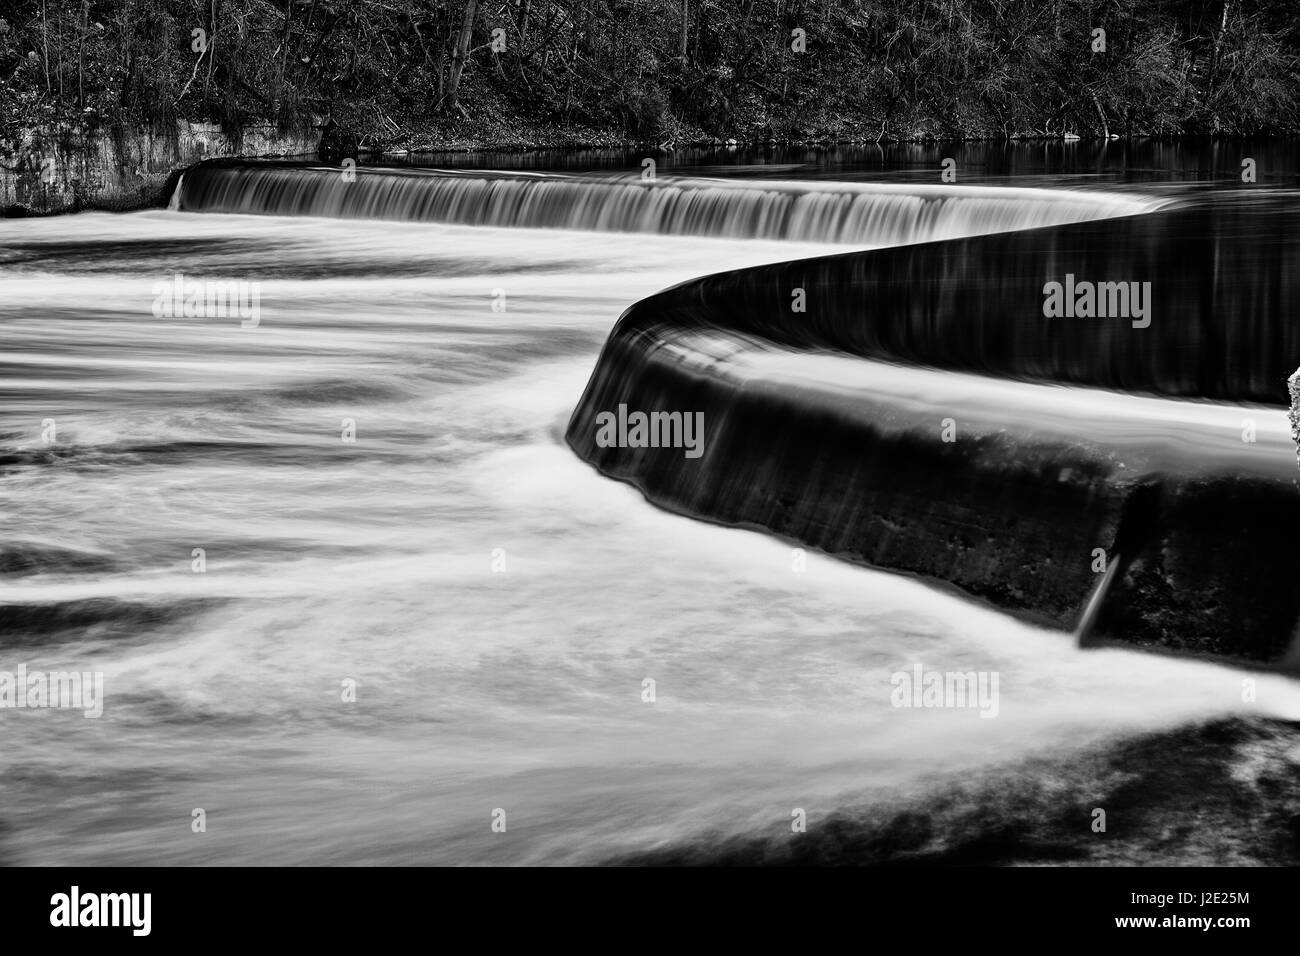 Controllo di inondazione diga sul fiume Grand.Paris Ontario in Canada. Immagine in bianco e nero Foto Stock